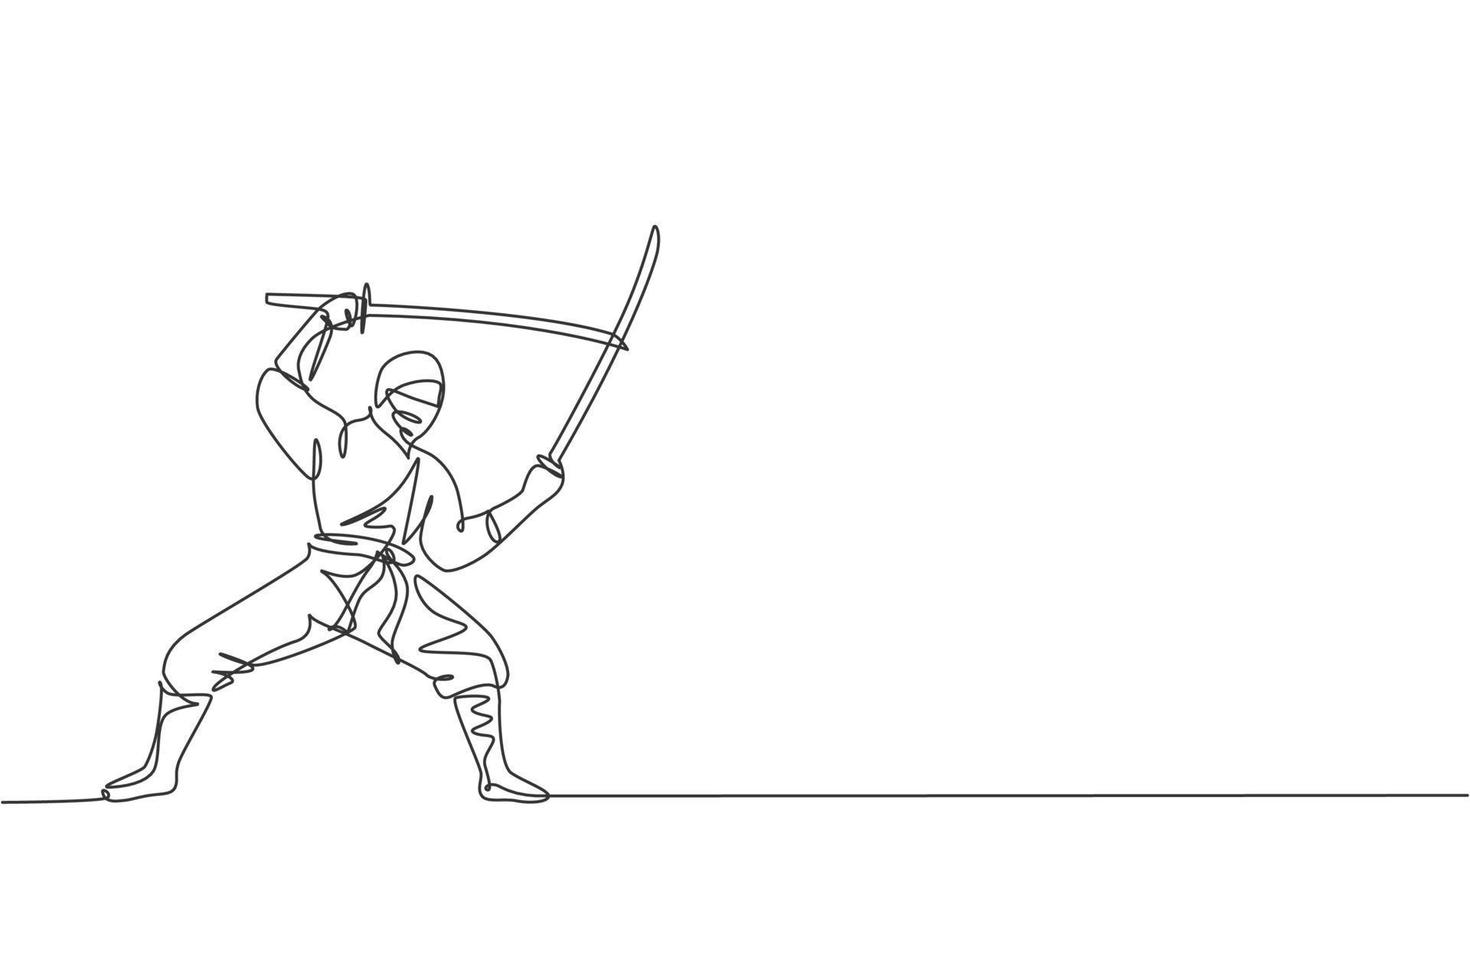 un seul dessin de jeune ninja traditionnel japonais énergique tenant des épées de samouraï en attaque pose illustration vectorielle. concept de sport d'art martial combatif. conception moderne de dessin en ligne continue vecteur